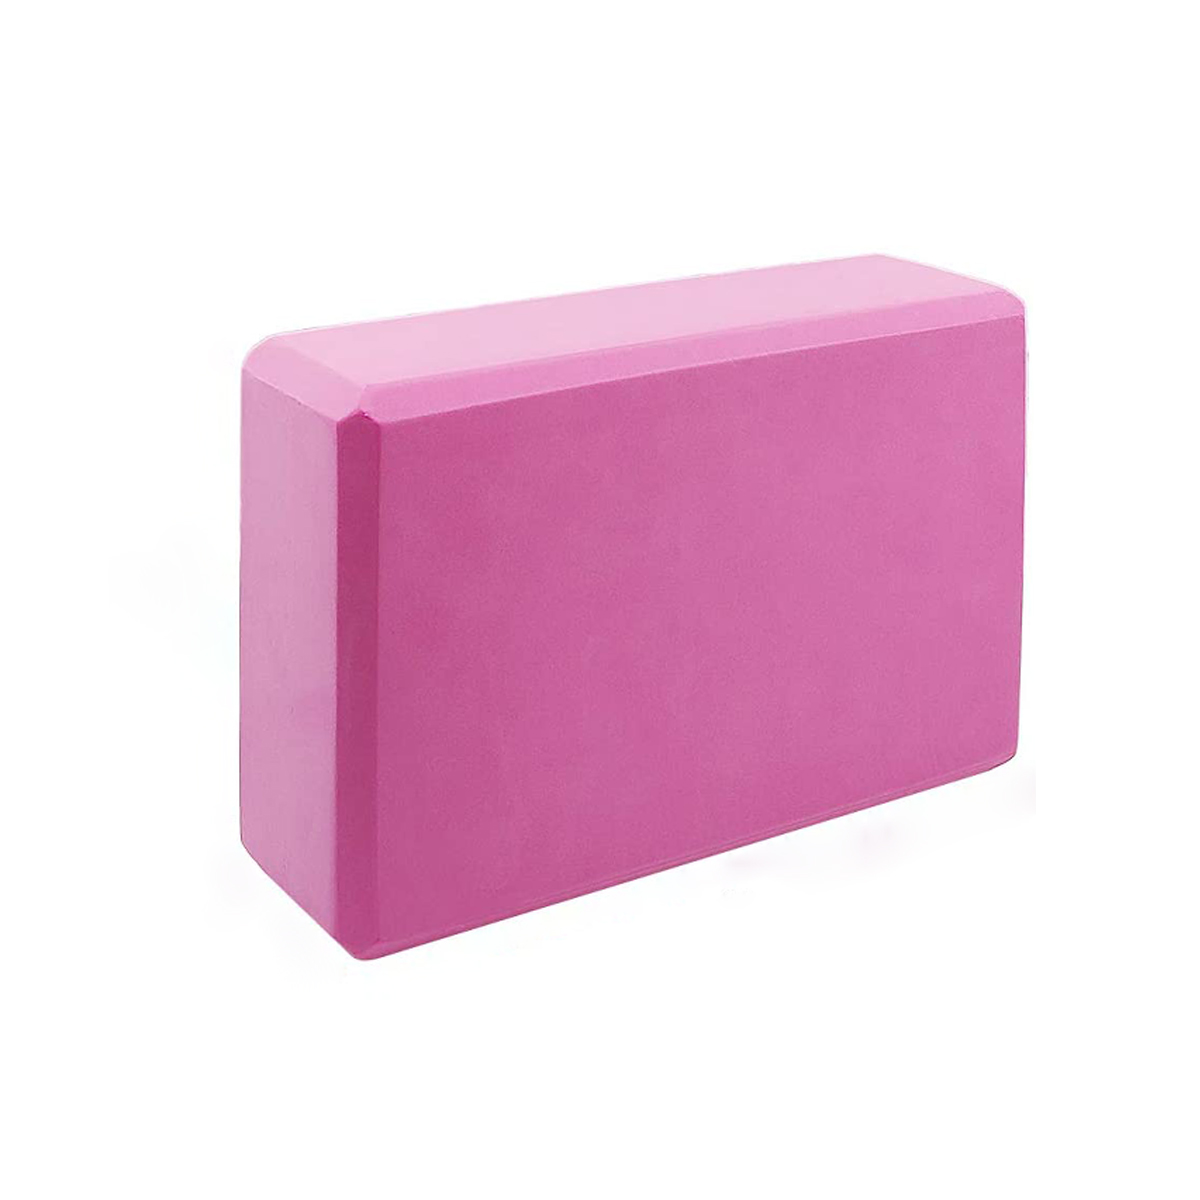 Блок для йоги Atlanterra ATYB 23x15x7,5 см, розовый